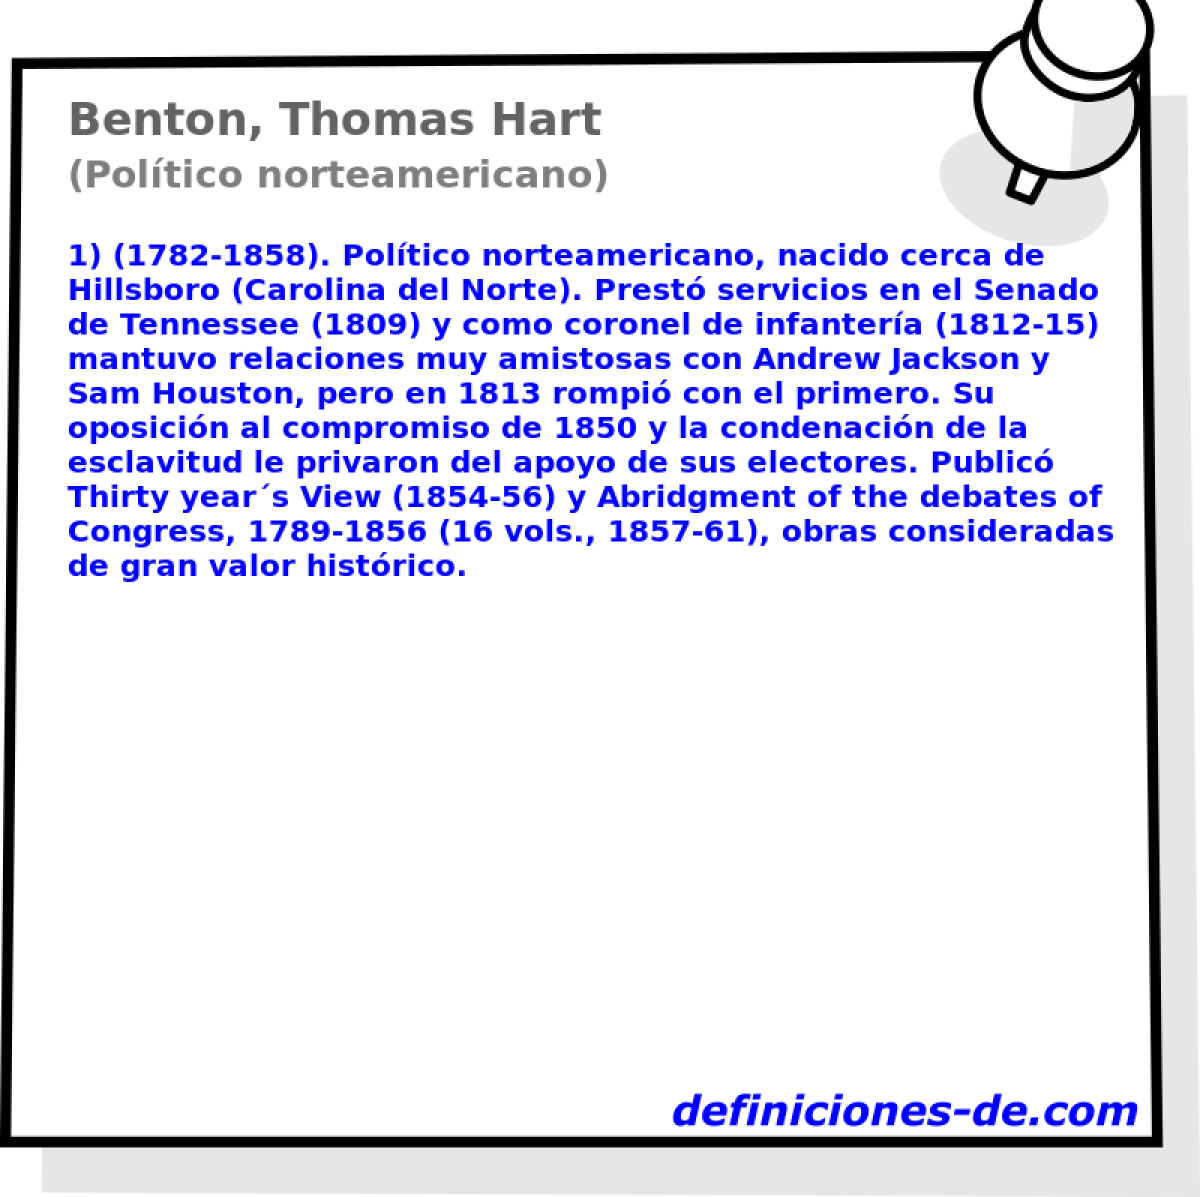 Benton, Thomas Hart (Poltico norteamericano)